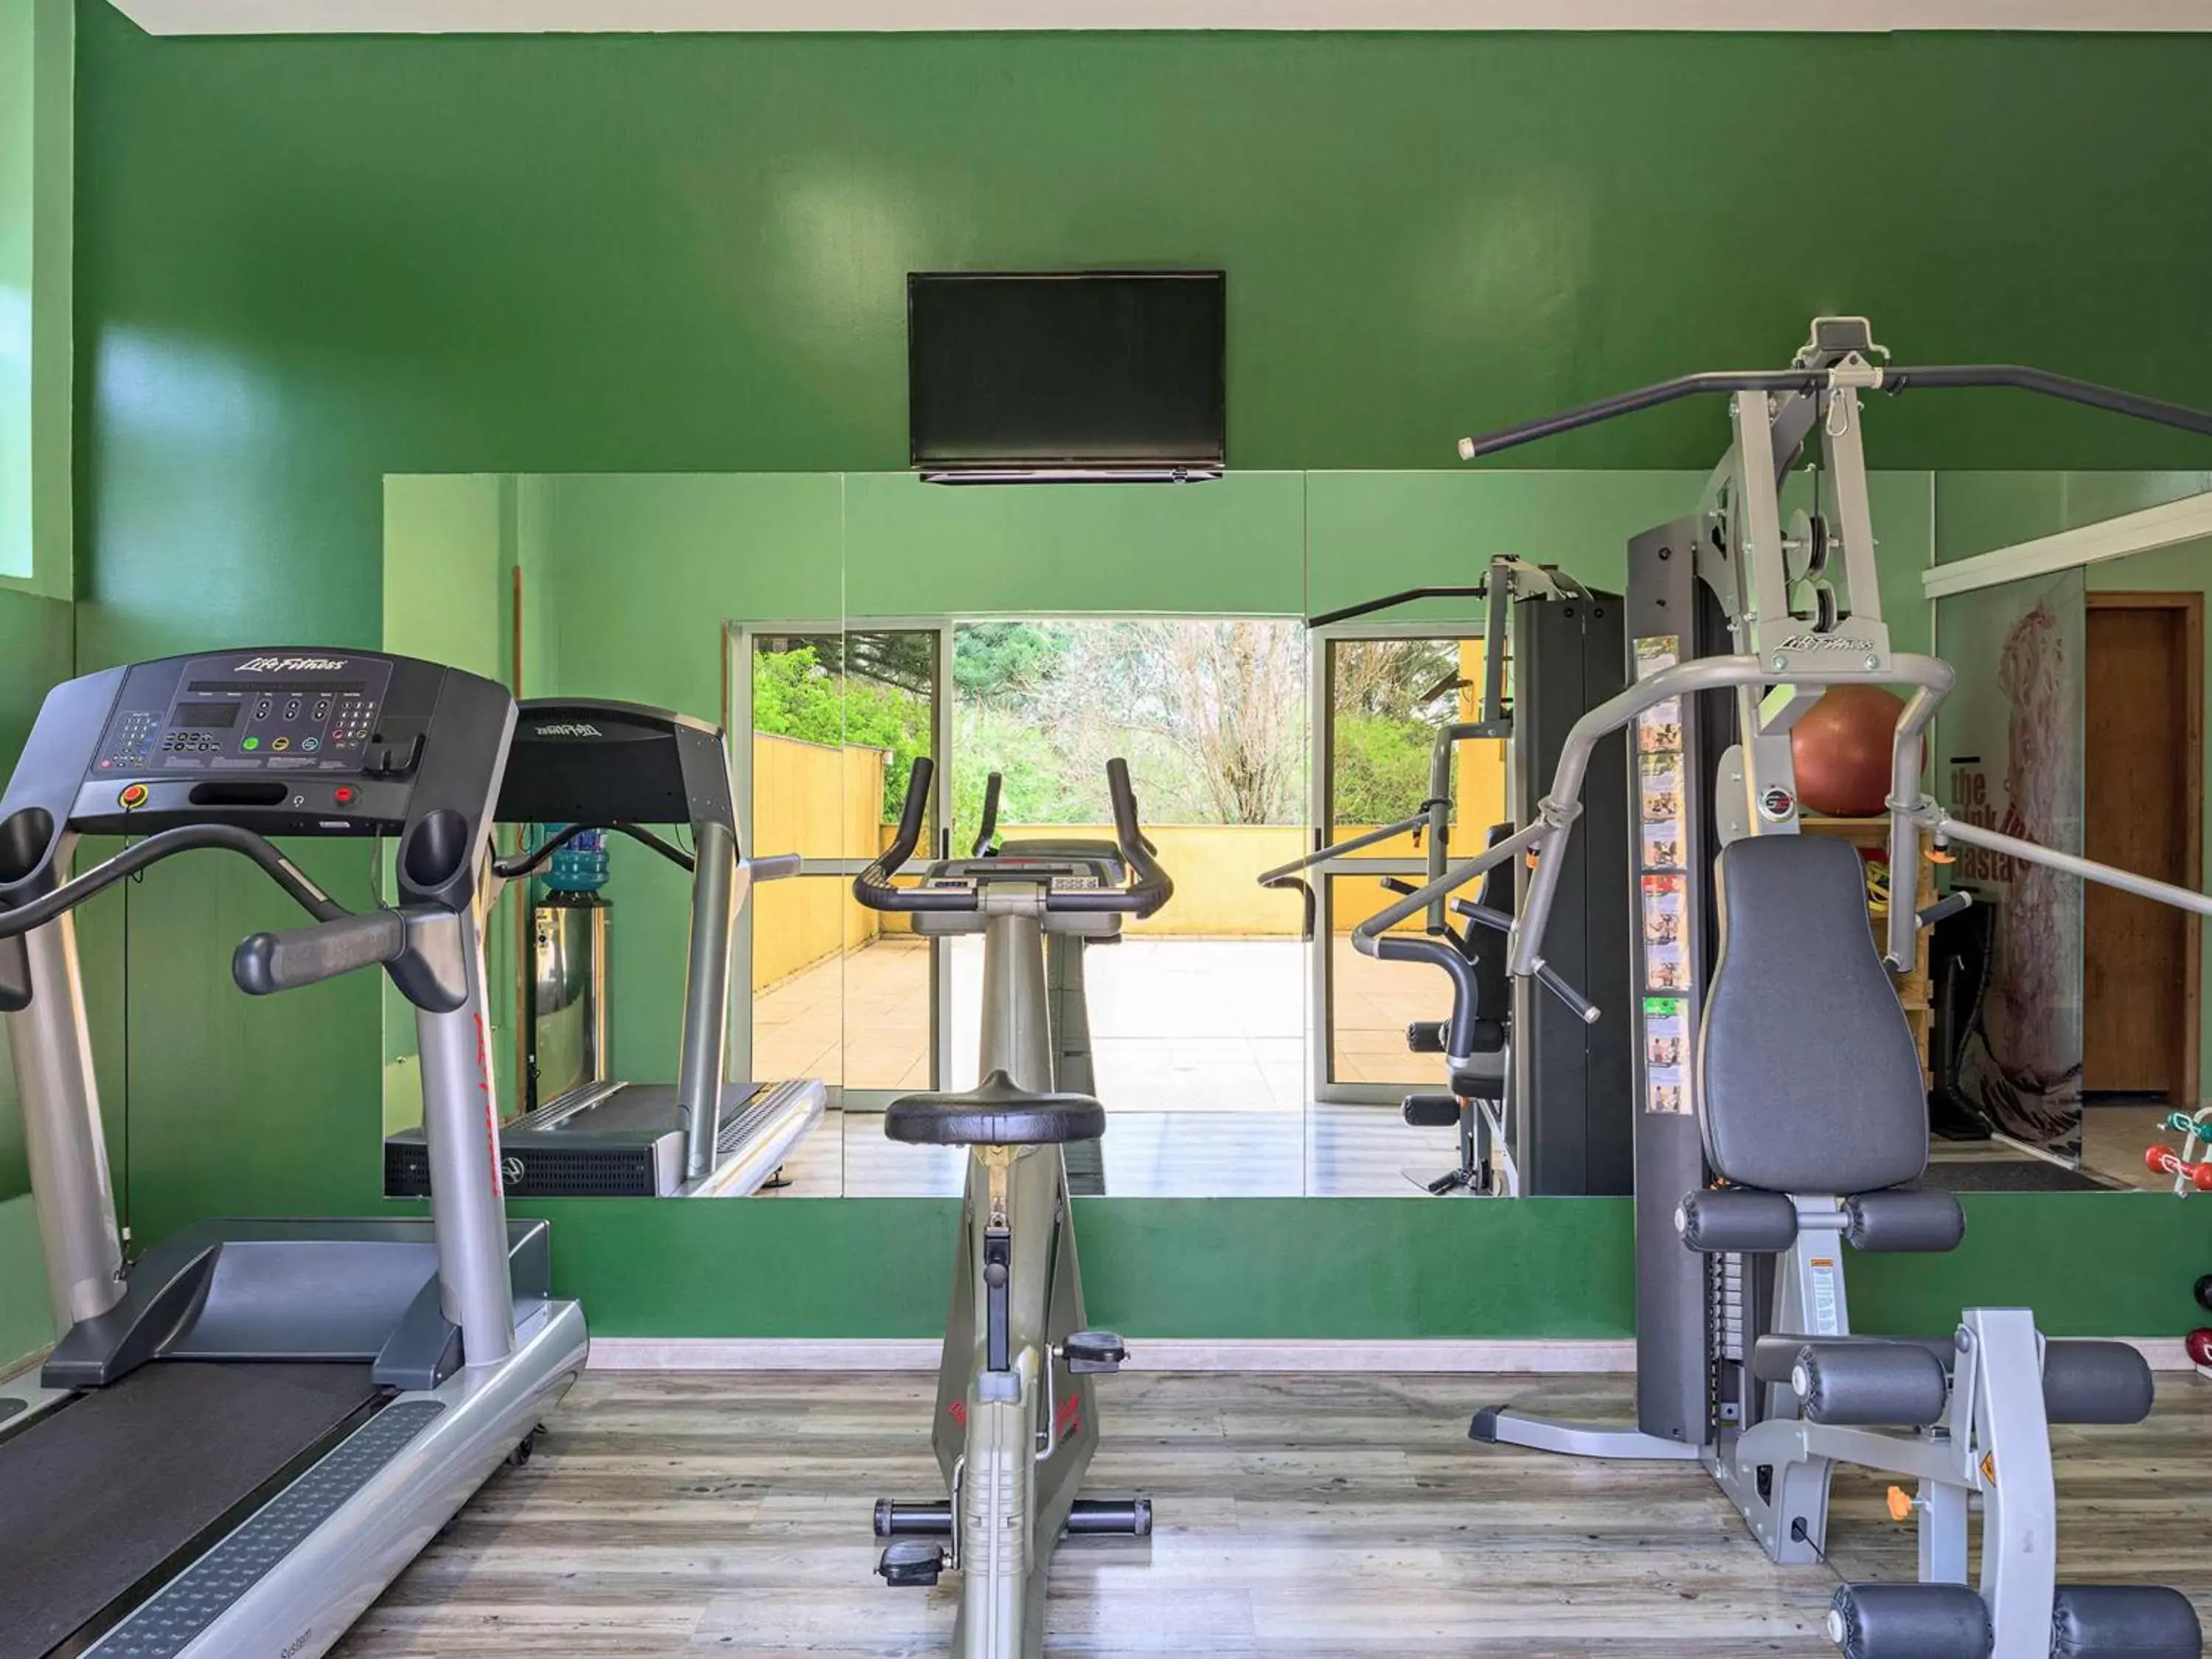 Fitness centre/facilities, Fitness Center/Facilities in Nacional Inn Curitiba Santa Felicidade